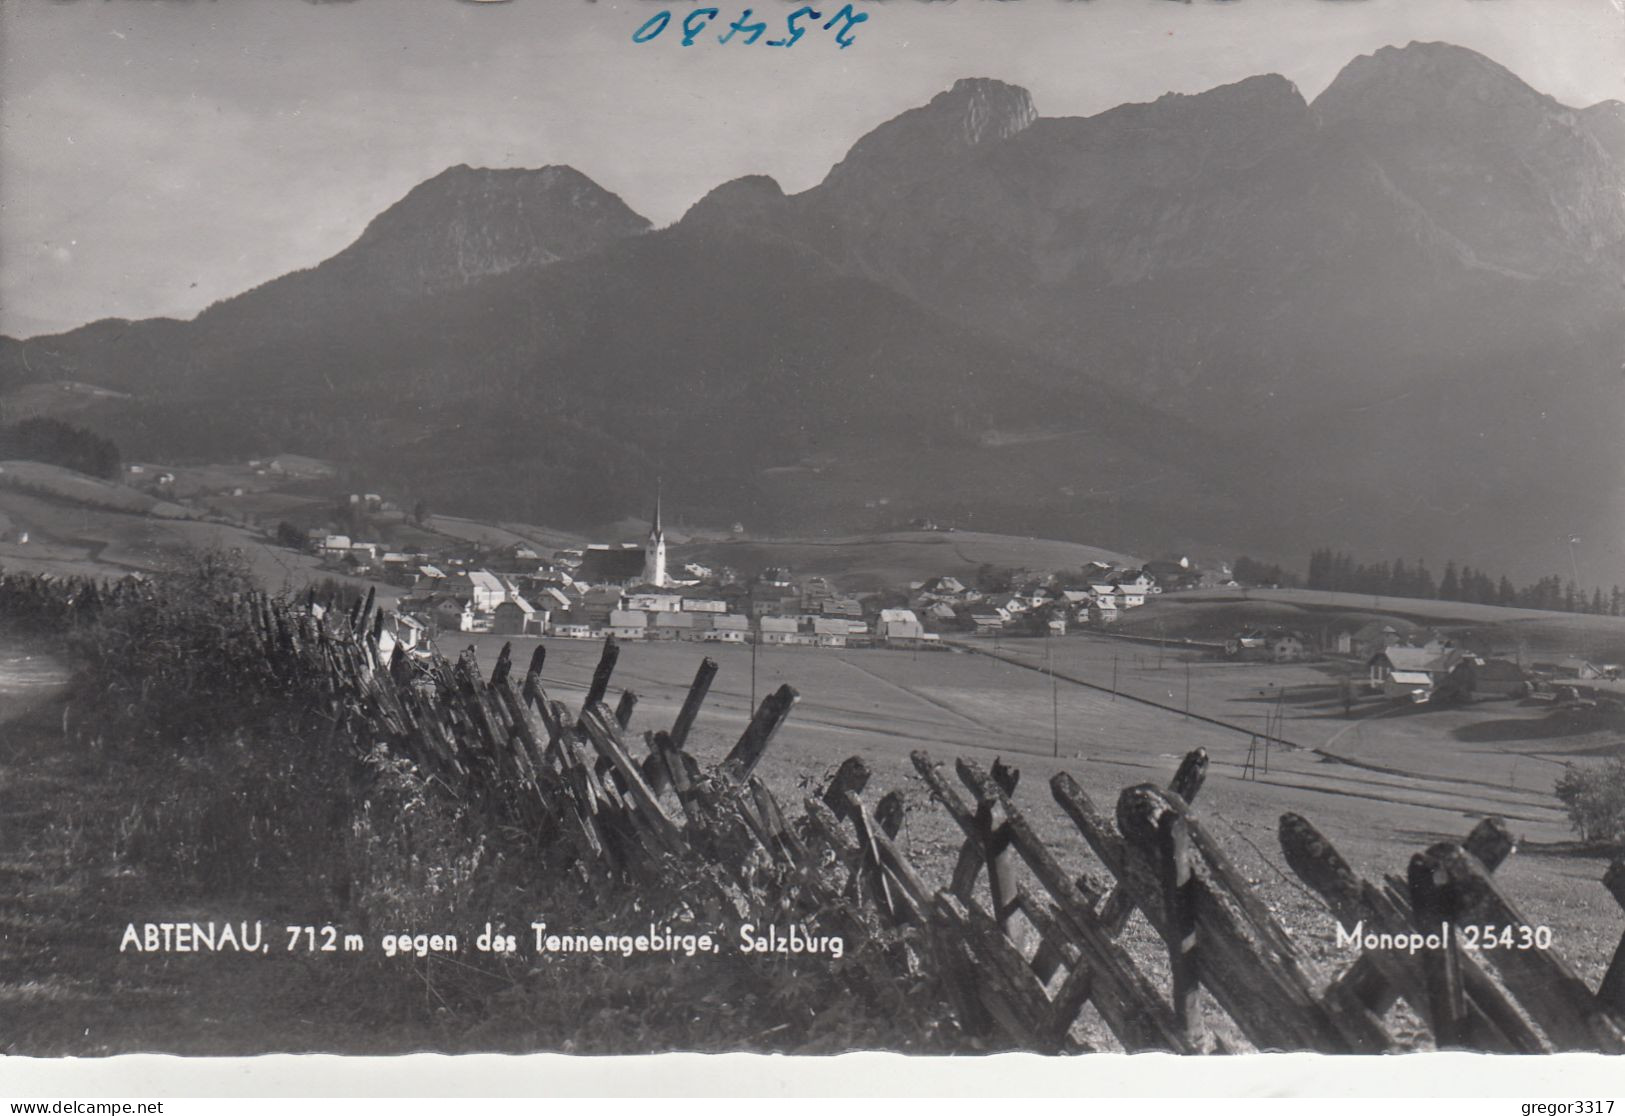 D9878) ABTENAU - 712m - Salzburg - Gegen Das Tennengebirge über Zaun Ggesehen - Tolle S/W FOTO AK - Abtenau